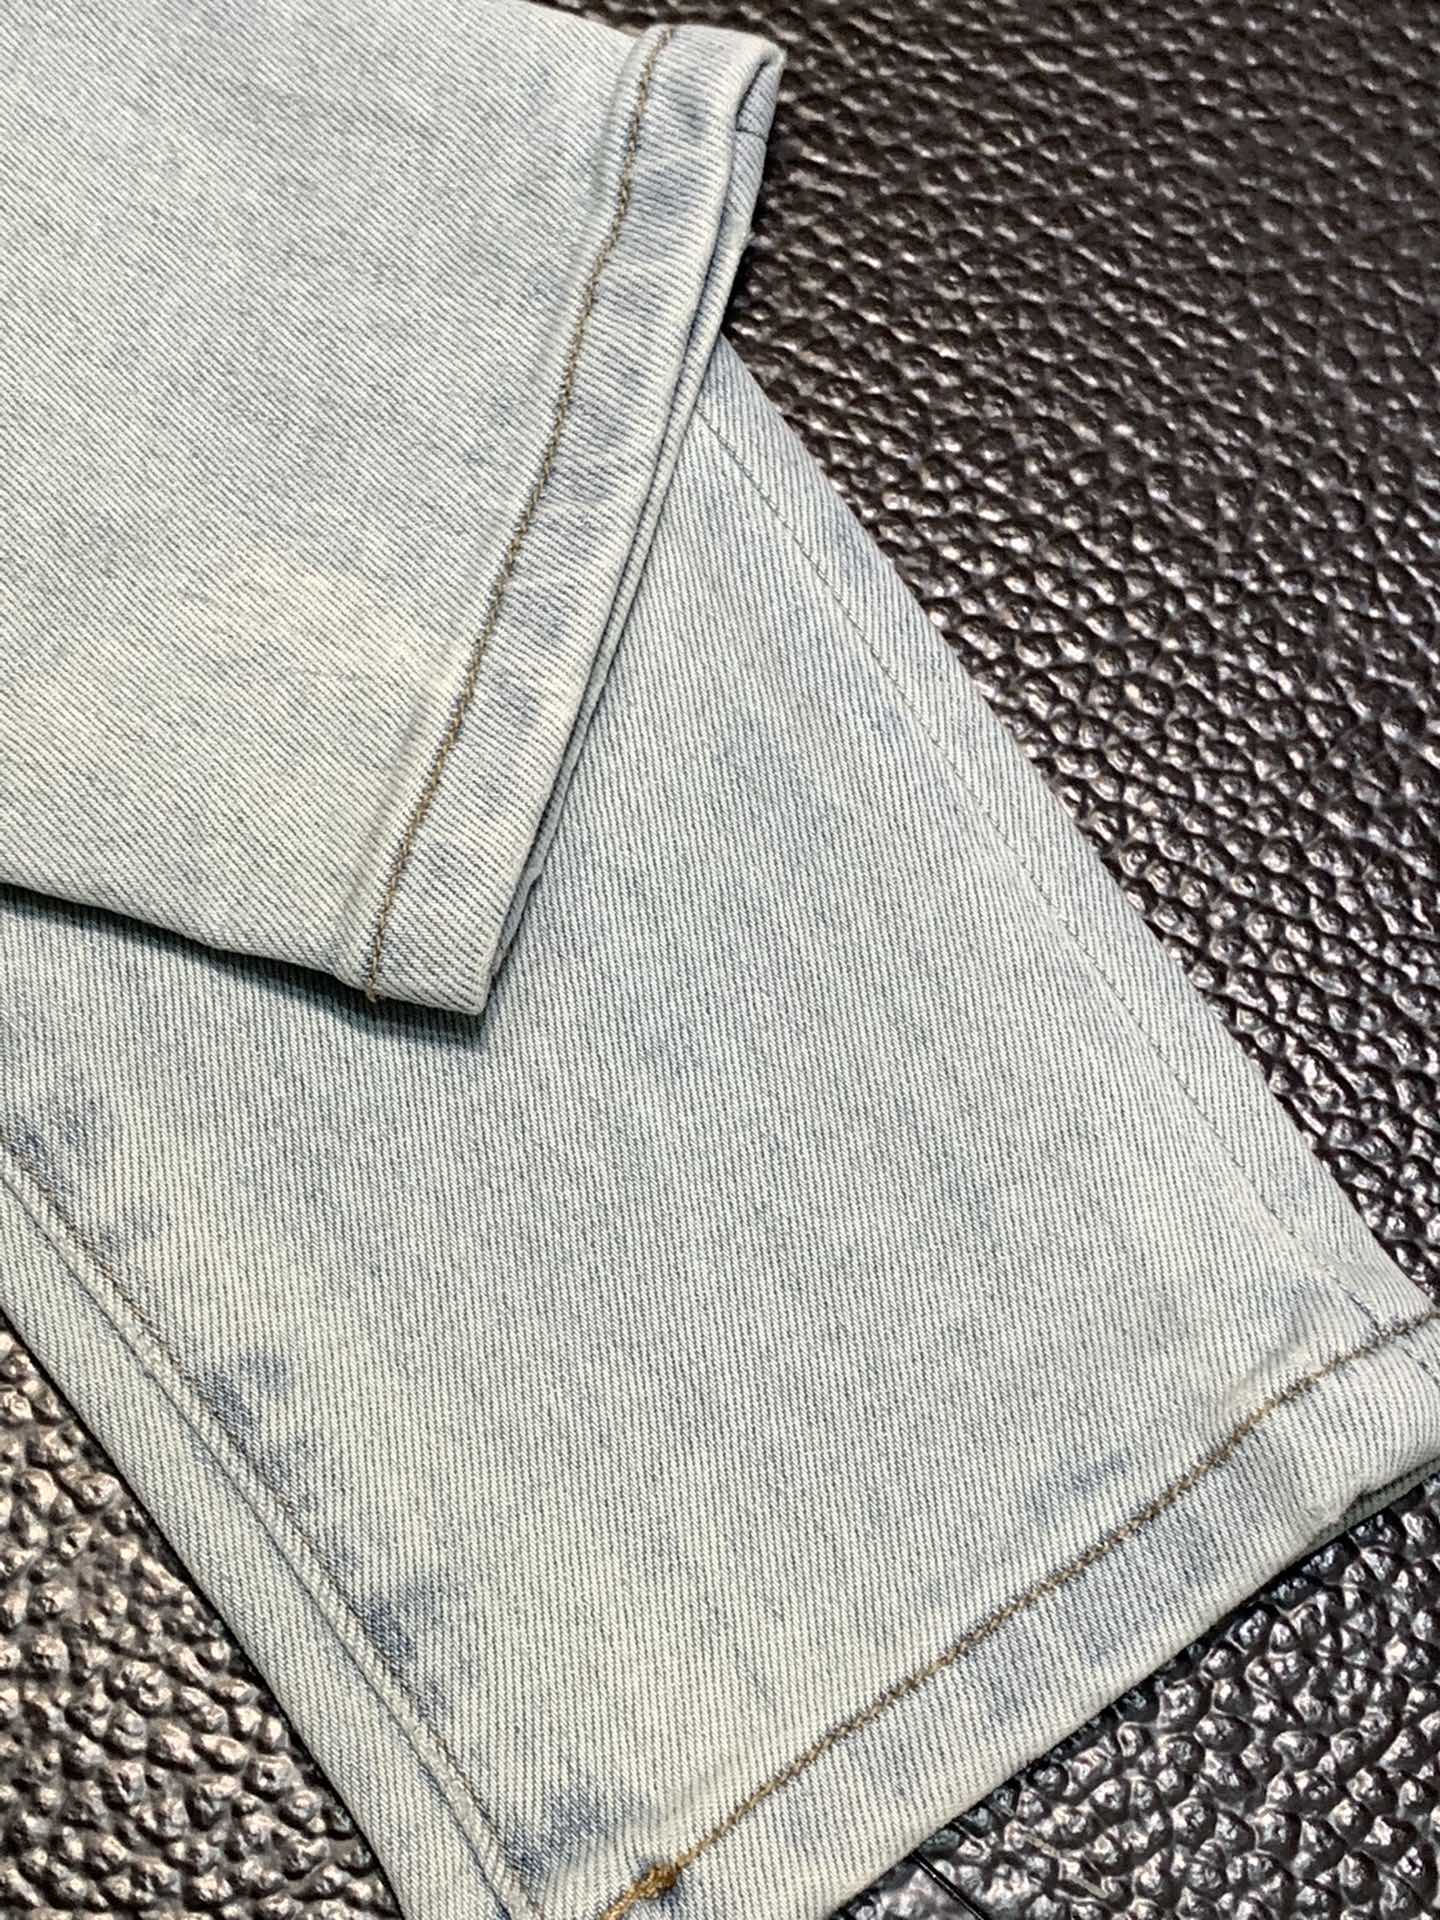 存在感のあるジーンズ505スーパーコピー カジュアルズボン ファッション 春秋服 デニム 修身 ダメージ ブルー_8